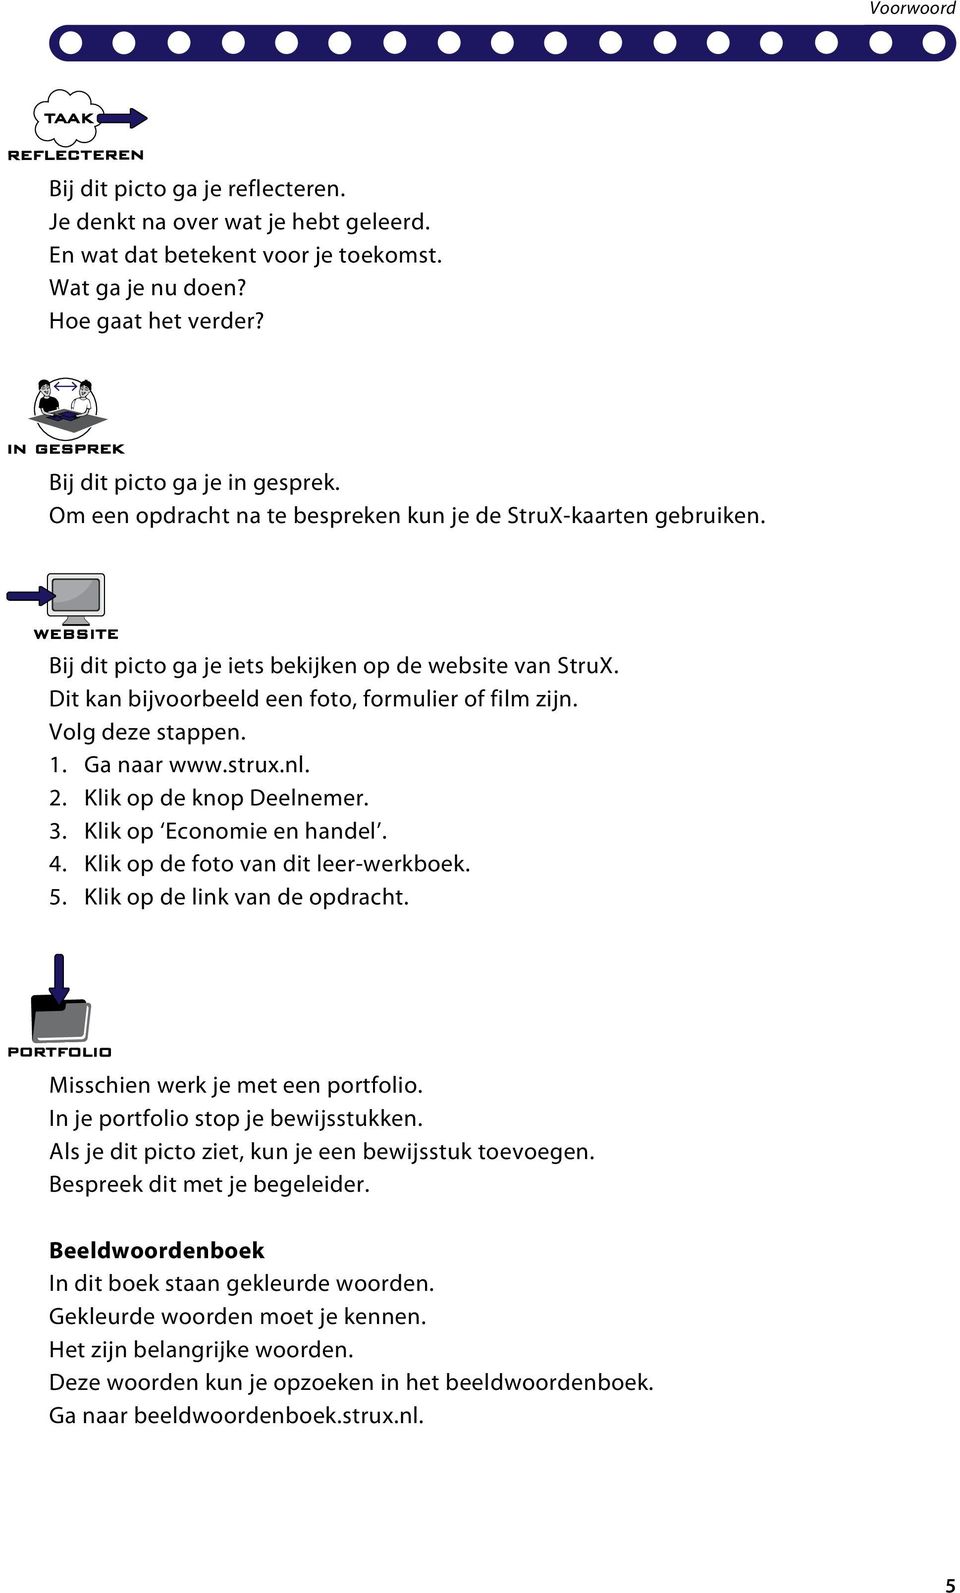 1. Ga naar www.strux.nl. 2. Klik op de knop Deelnemer. 3. Klik op Economie en handel. 4. Klik op de foto van dit leer-werkboek. 5. Klik op de link van de opdracht. Misschien werk je met een portfolio.